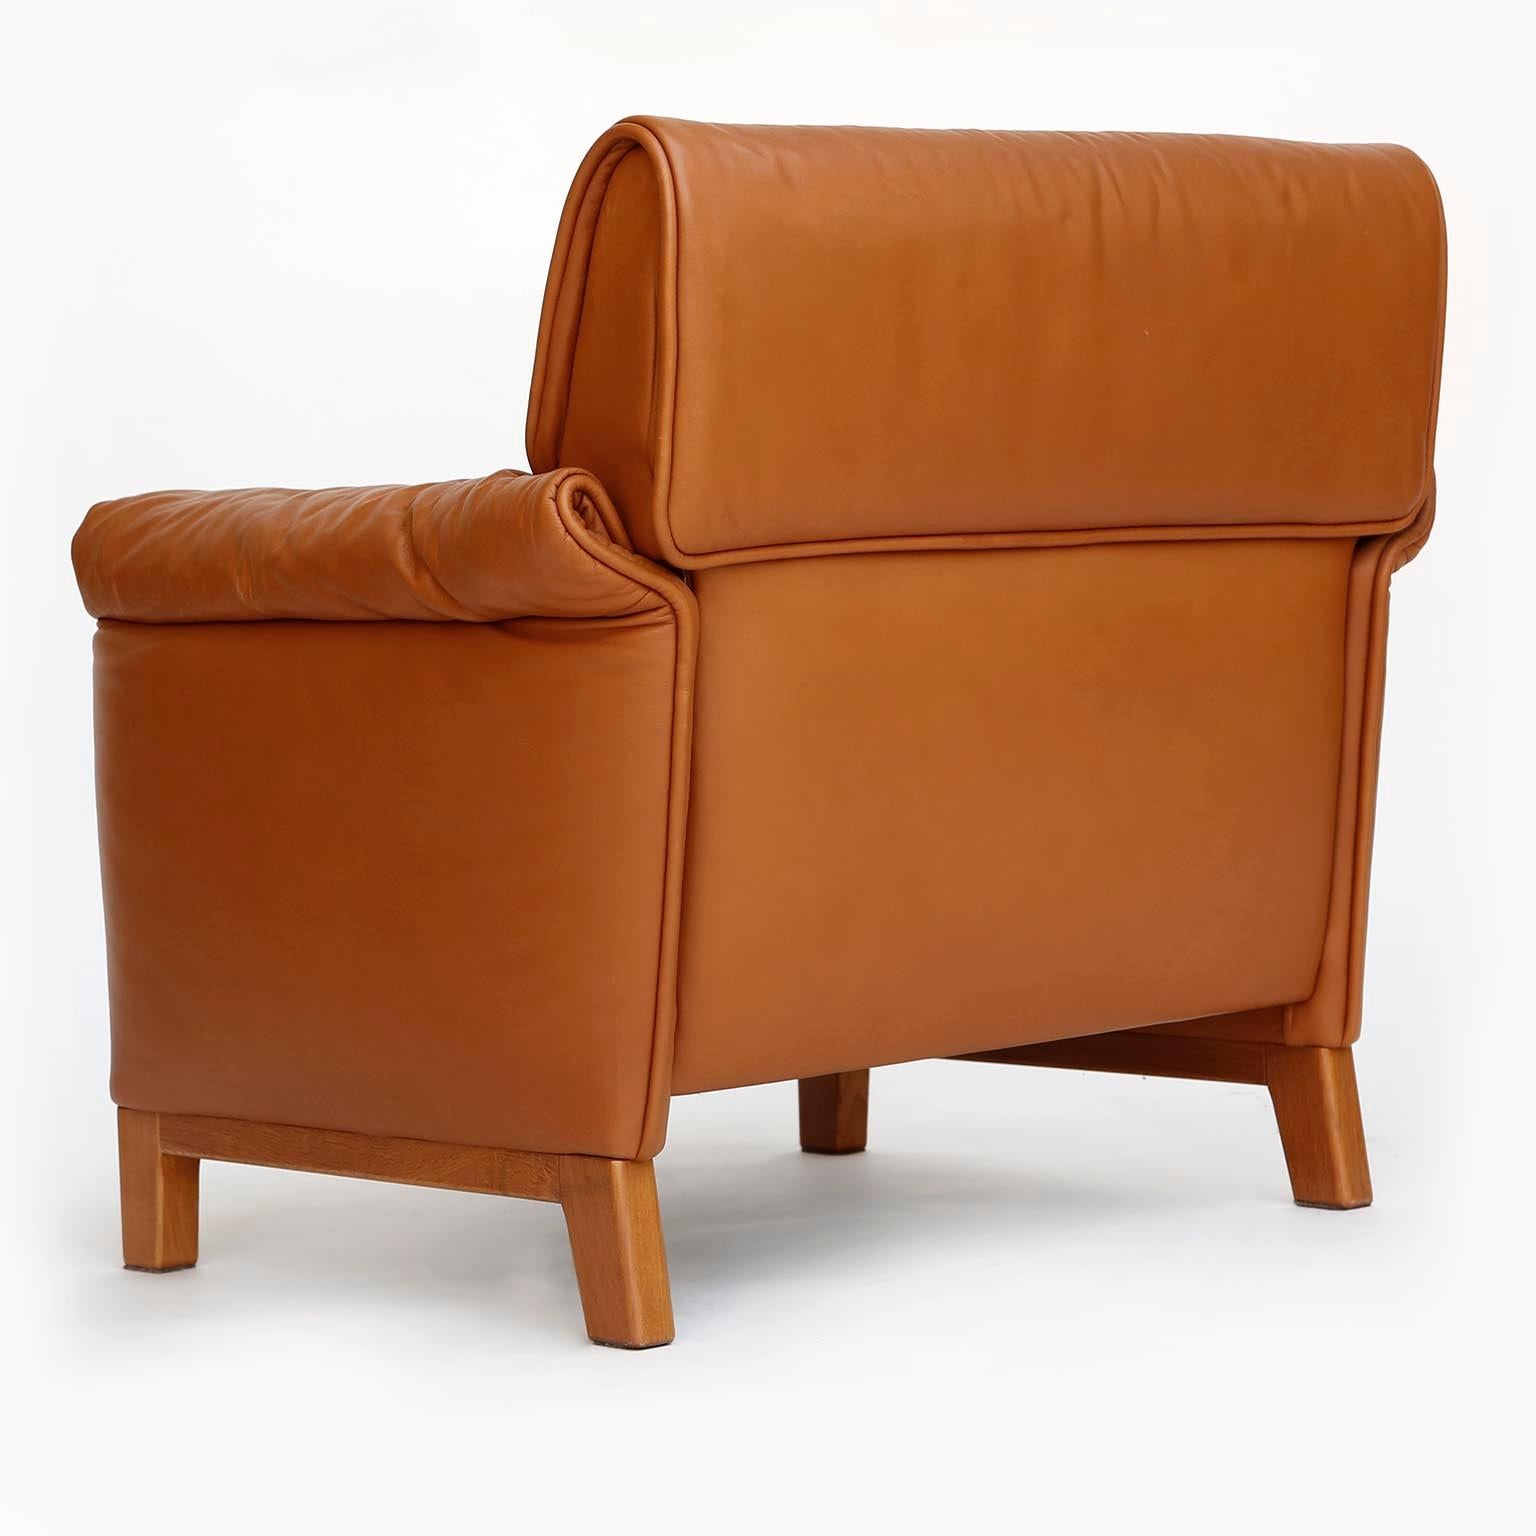 Four De Sede 'DS-14' Armchairs Lounge Chairs, Cognac Leather Teak, 1989 For Sale 1